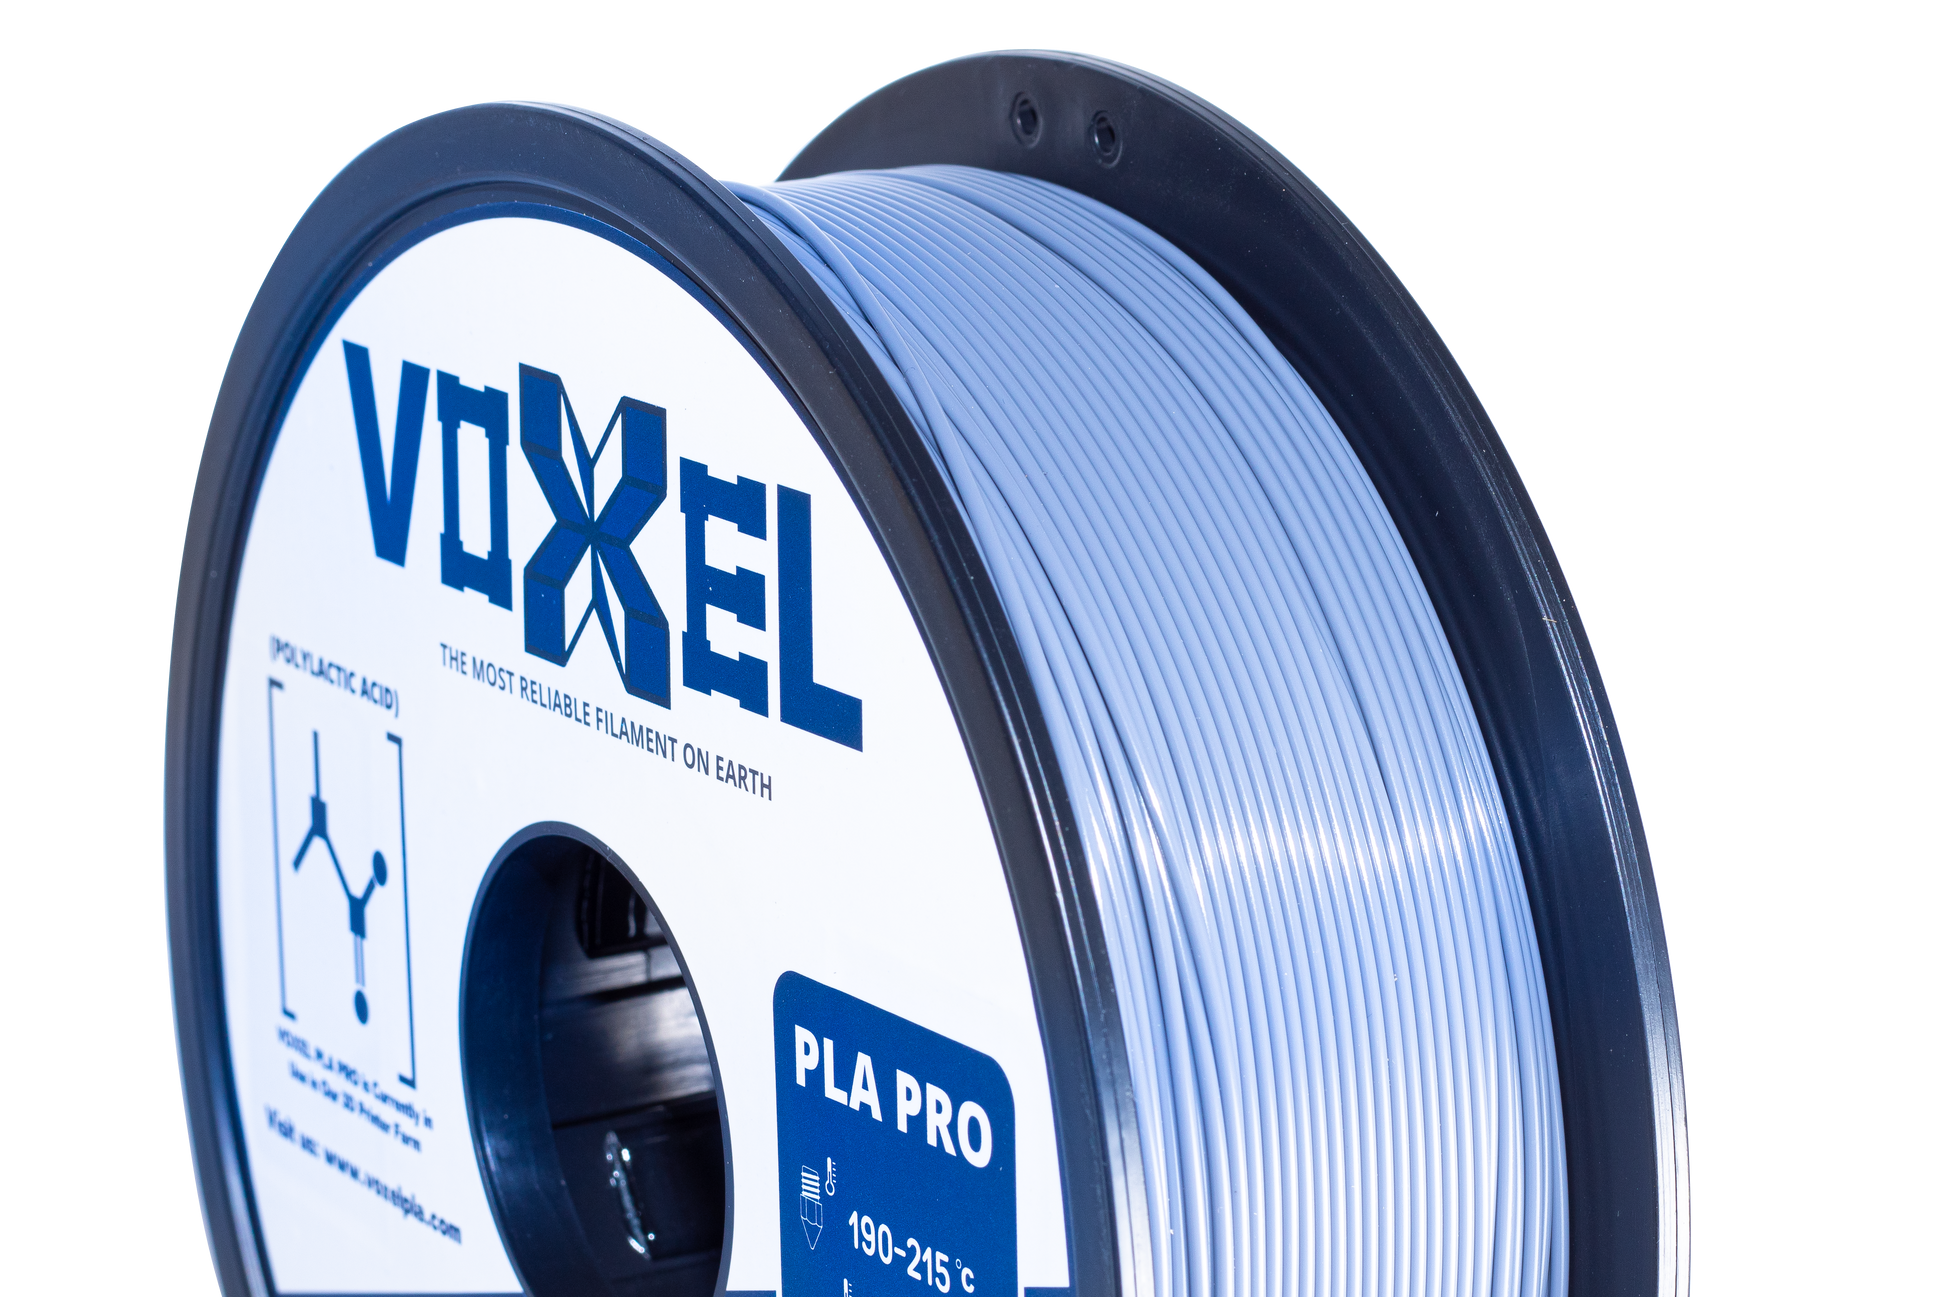 VOXELPLA PLA Plus (Pro) Voxel Black 1.75mm Filament (1kg, 3kg, and 5kg)